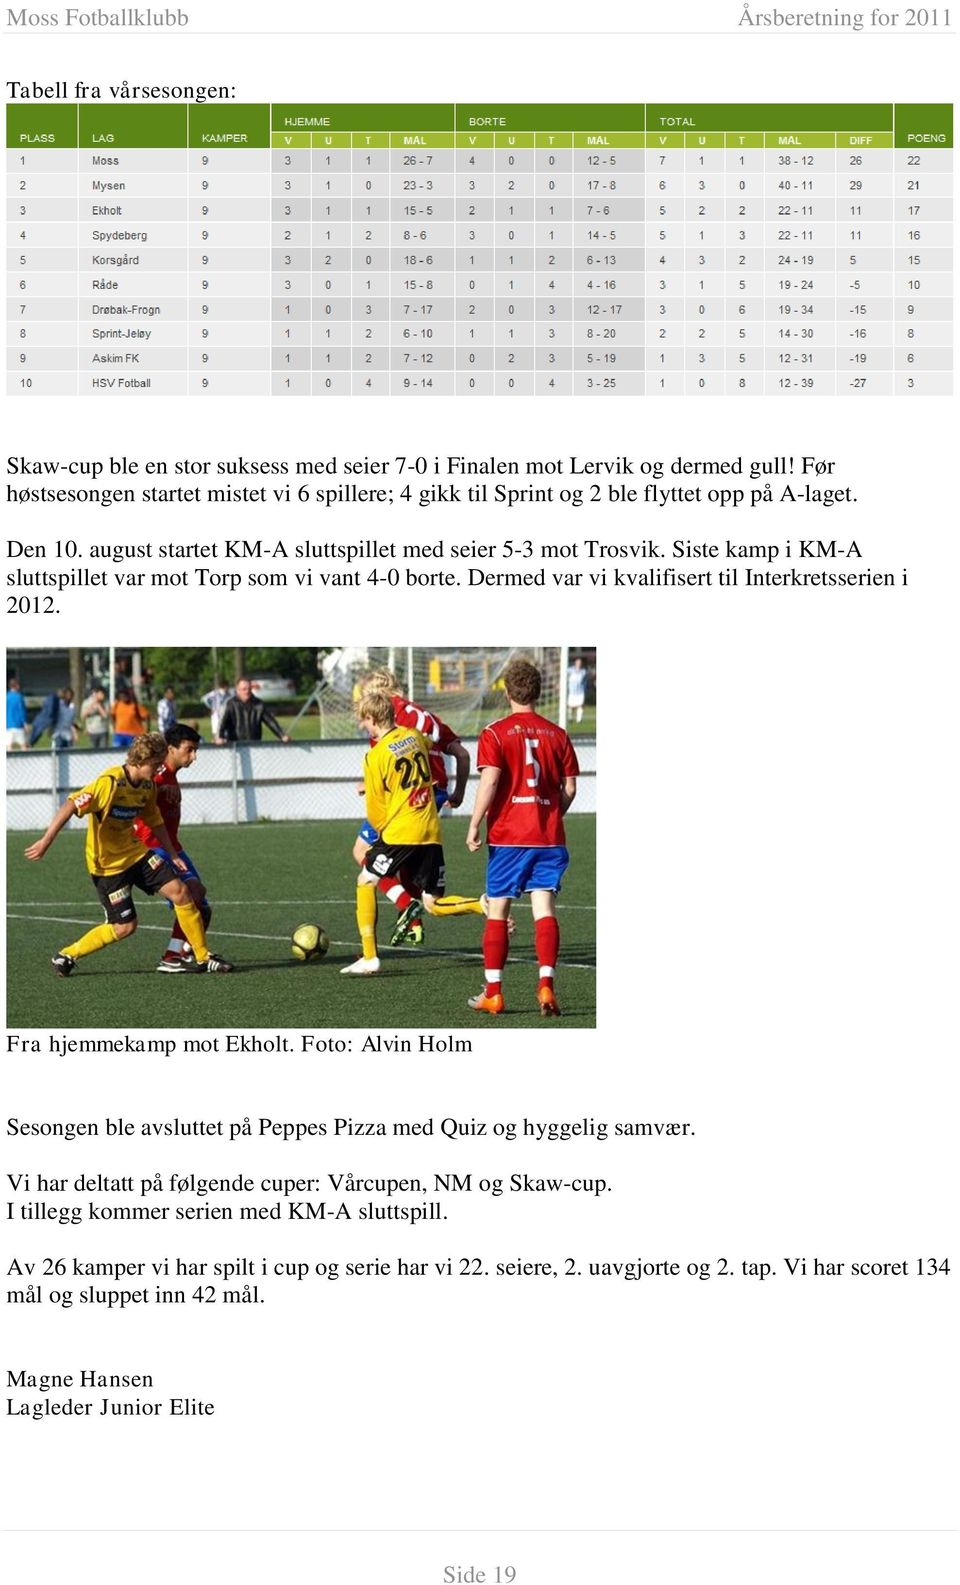 Siste kamp i KM-A sluttspillet var mot Torp som vi vant 4-0 borte. Dermed var vi kvalifisert til Interkretsserien i 2012. Fra hjemmekamp mot Ekholt.